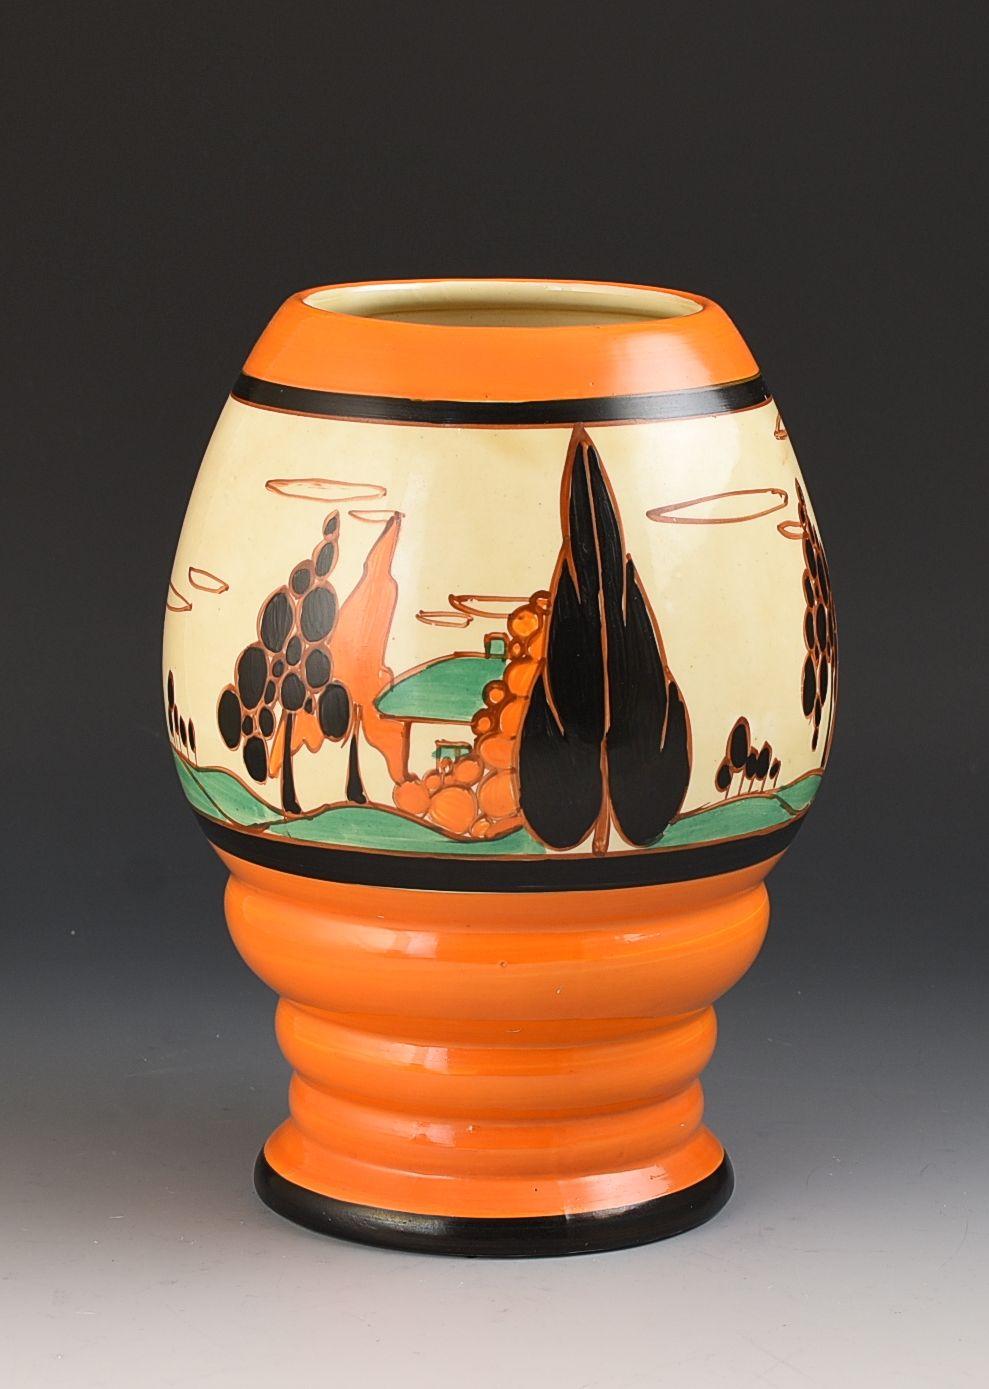 Un superbe vase de forme 362 dans une version précoce et audacieuse de Trees & House. Elle date de 1931 et présente une version parfaitement peinte et répétée du motif autour de la forme. Les couleurs sont propres et, à l'exception de quelques